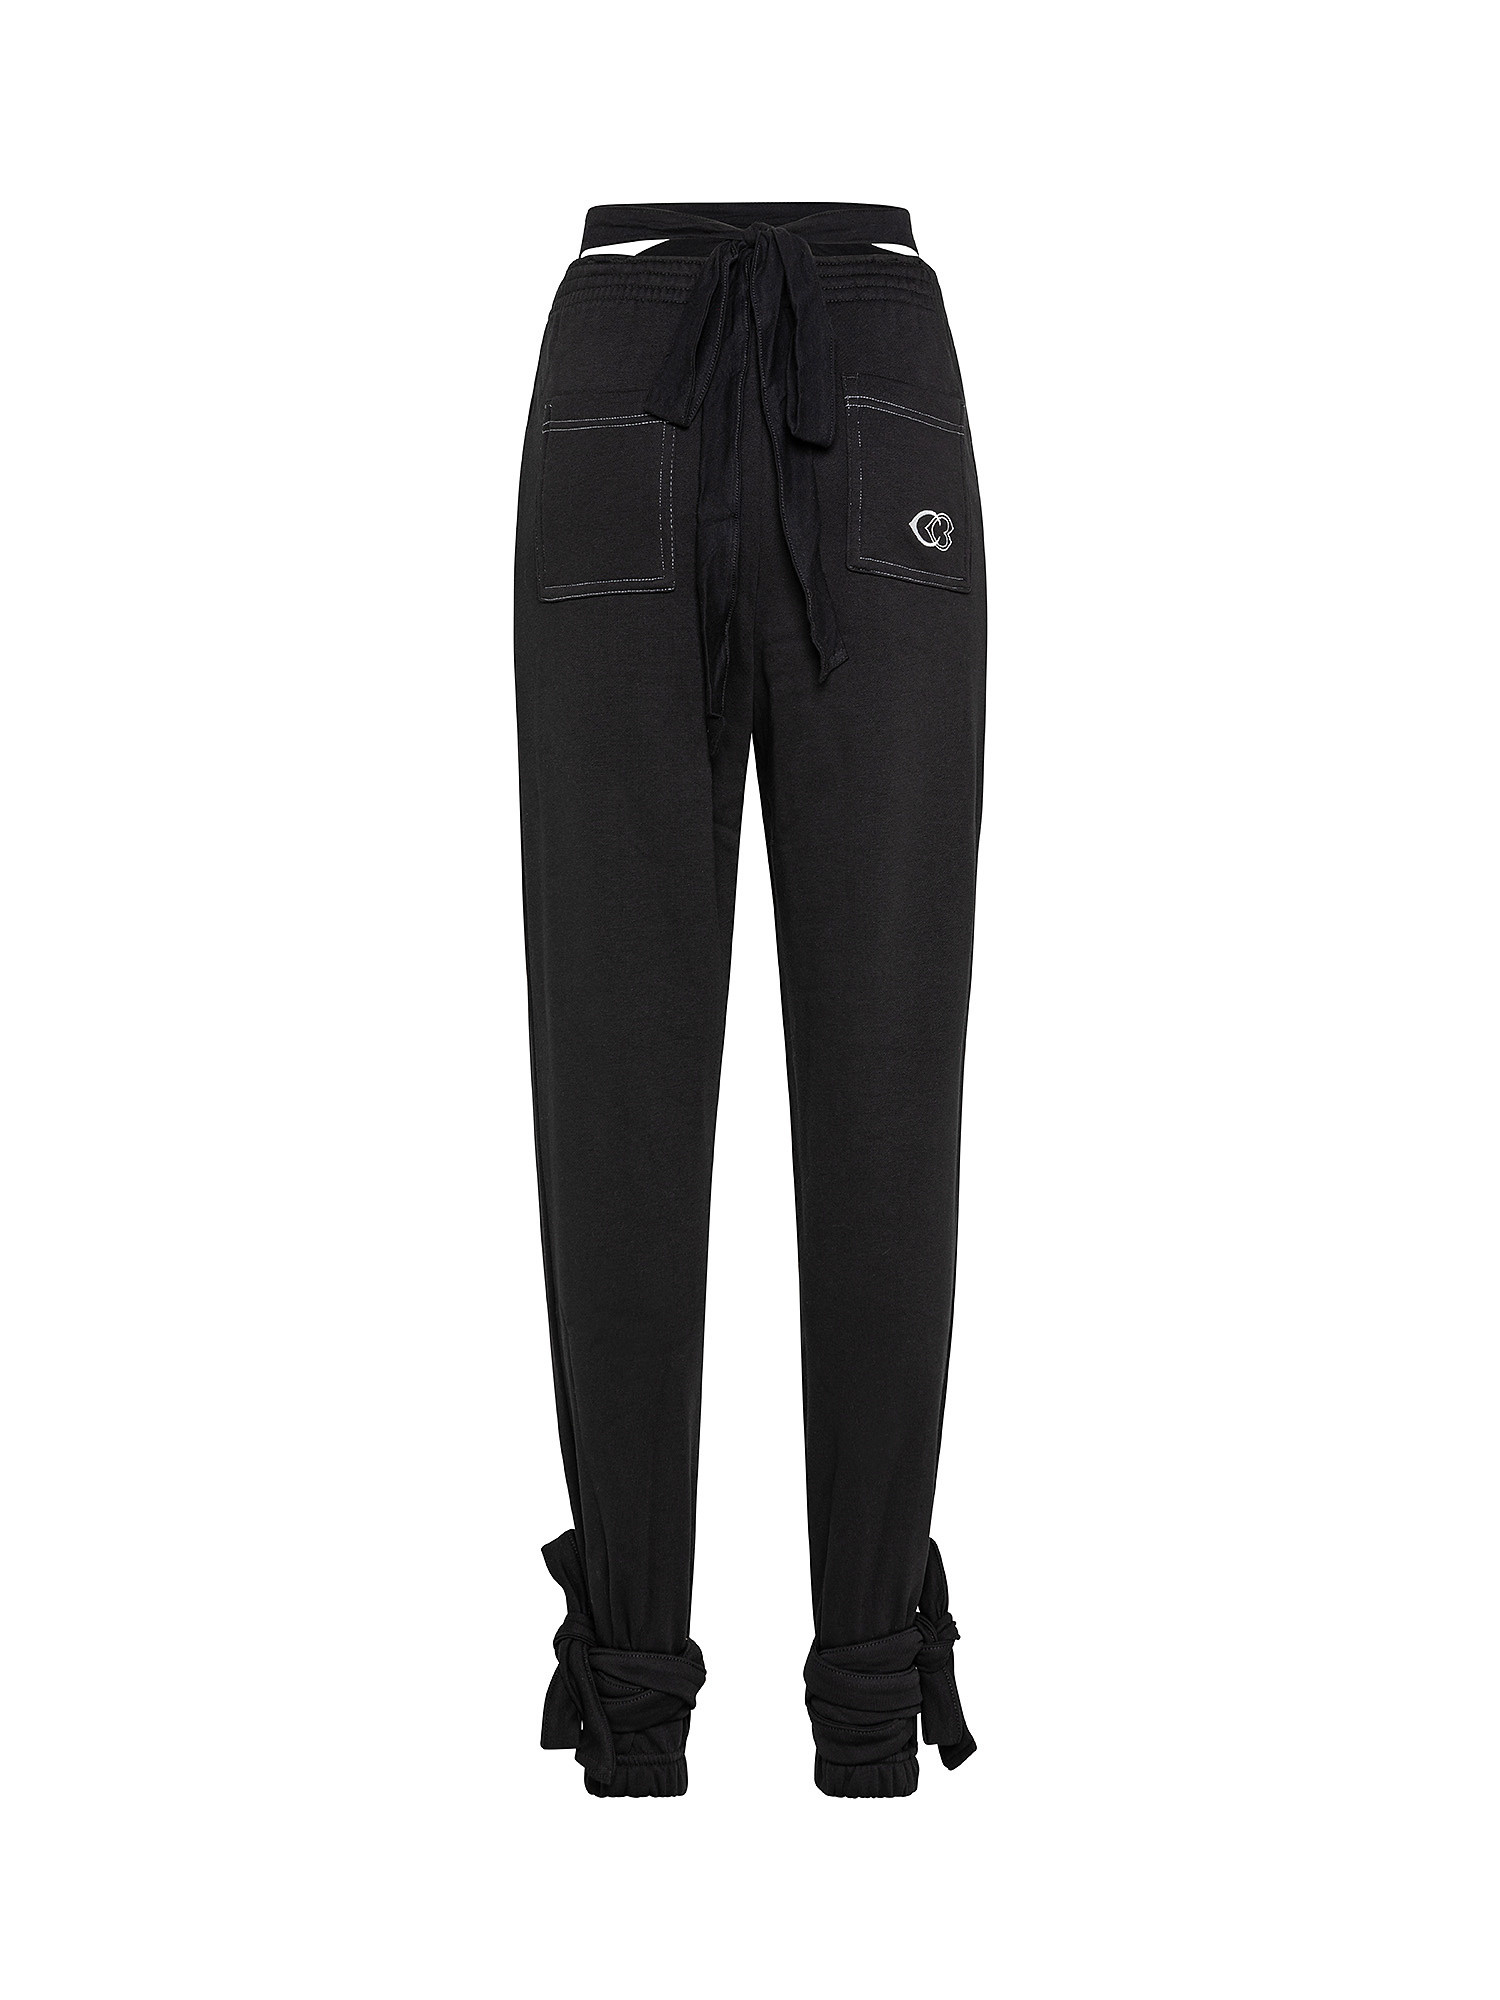 Cardi B Knit Pants, Black, large image number 1